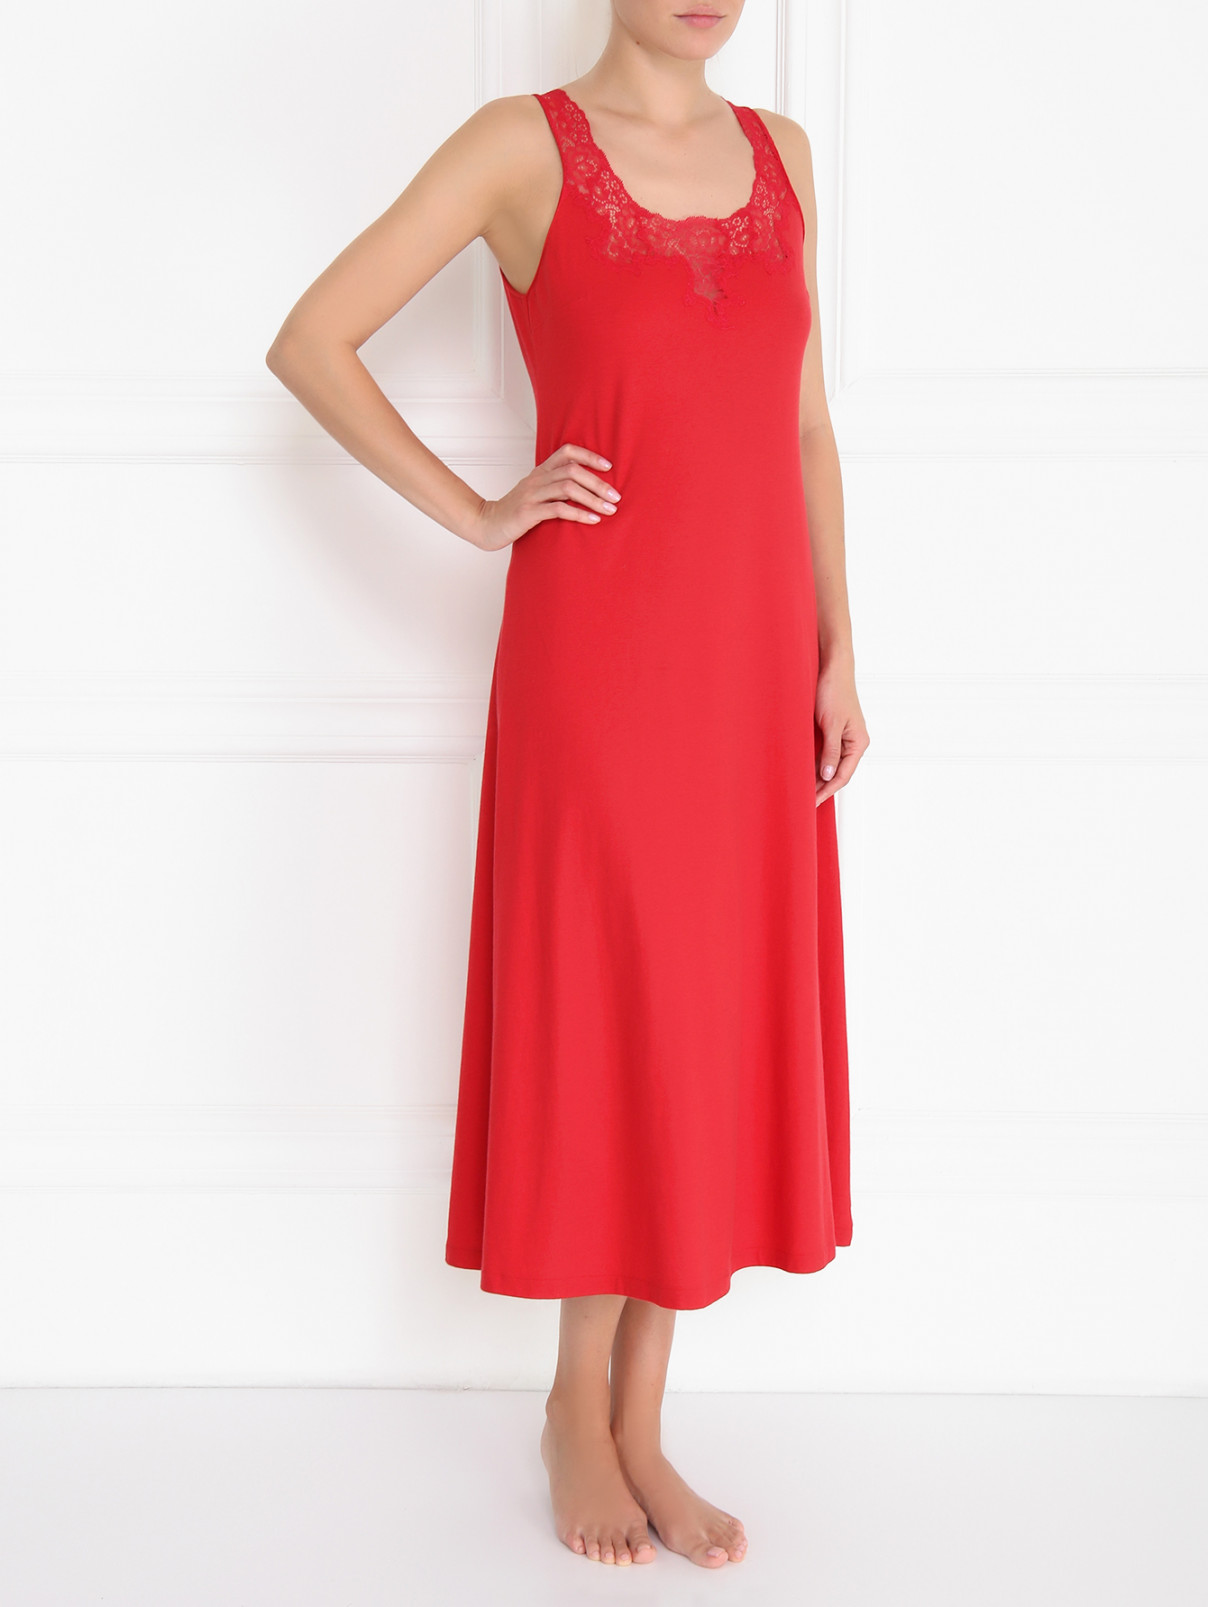 Сорочка из хлопка и шелка La Perla  –  Модель Общий вид  – Цвет:  Красный